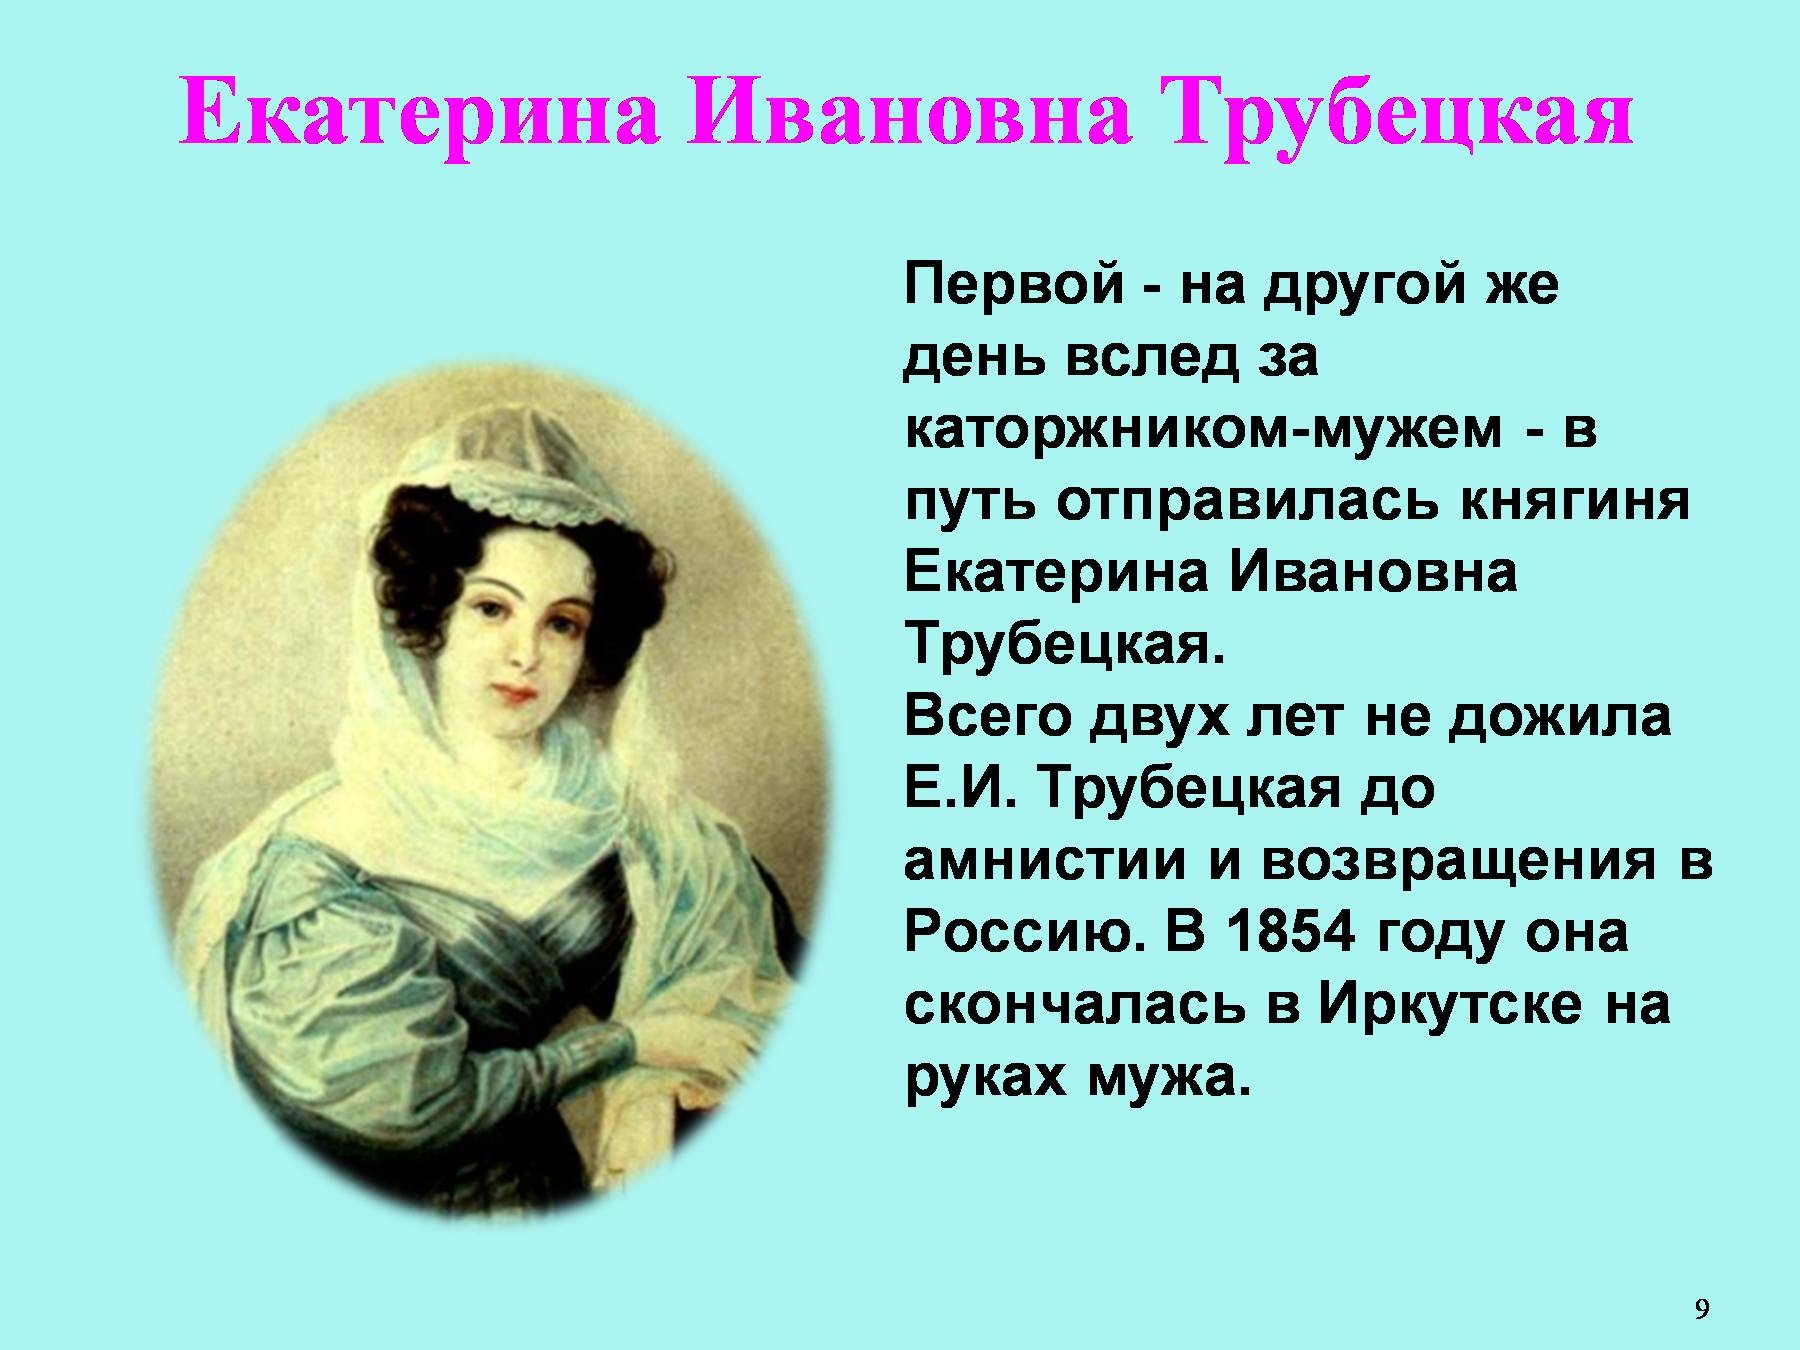 Княгиня Трубецкая Некрасов иллюстрации